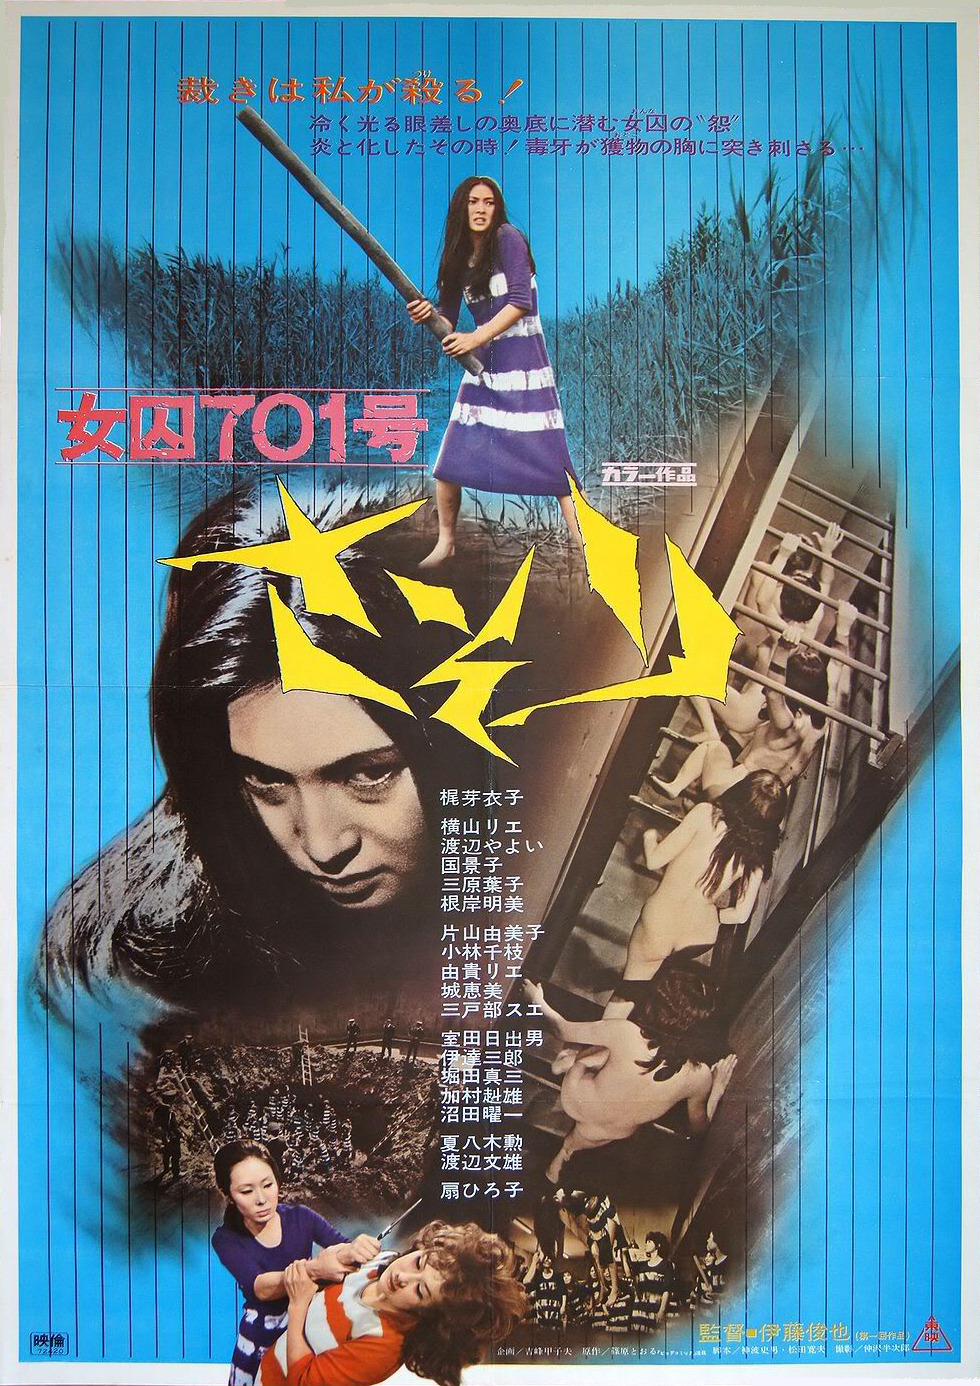 Extra Large Movie Poster Image for Joshû 701-gô: Sasori (#1 of 2)